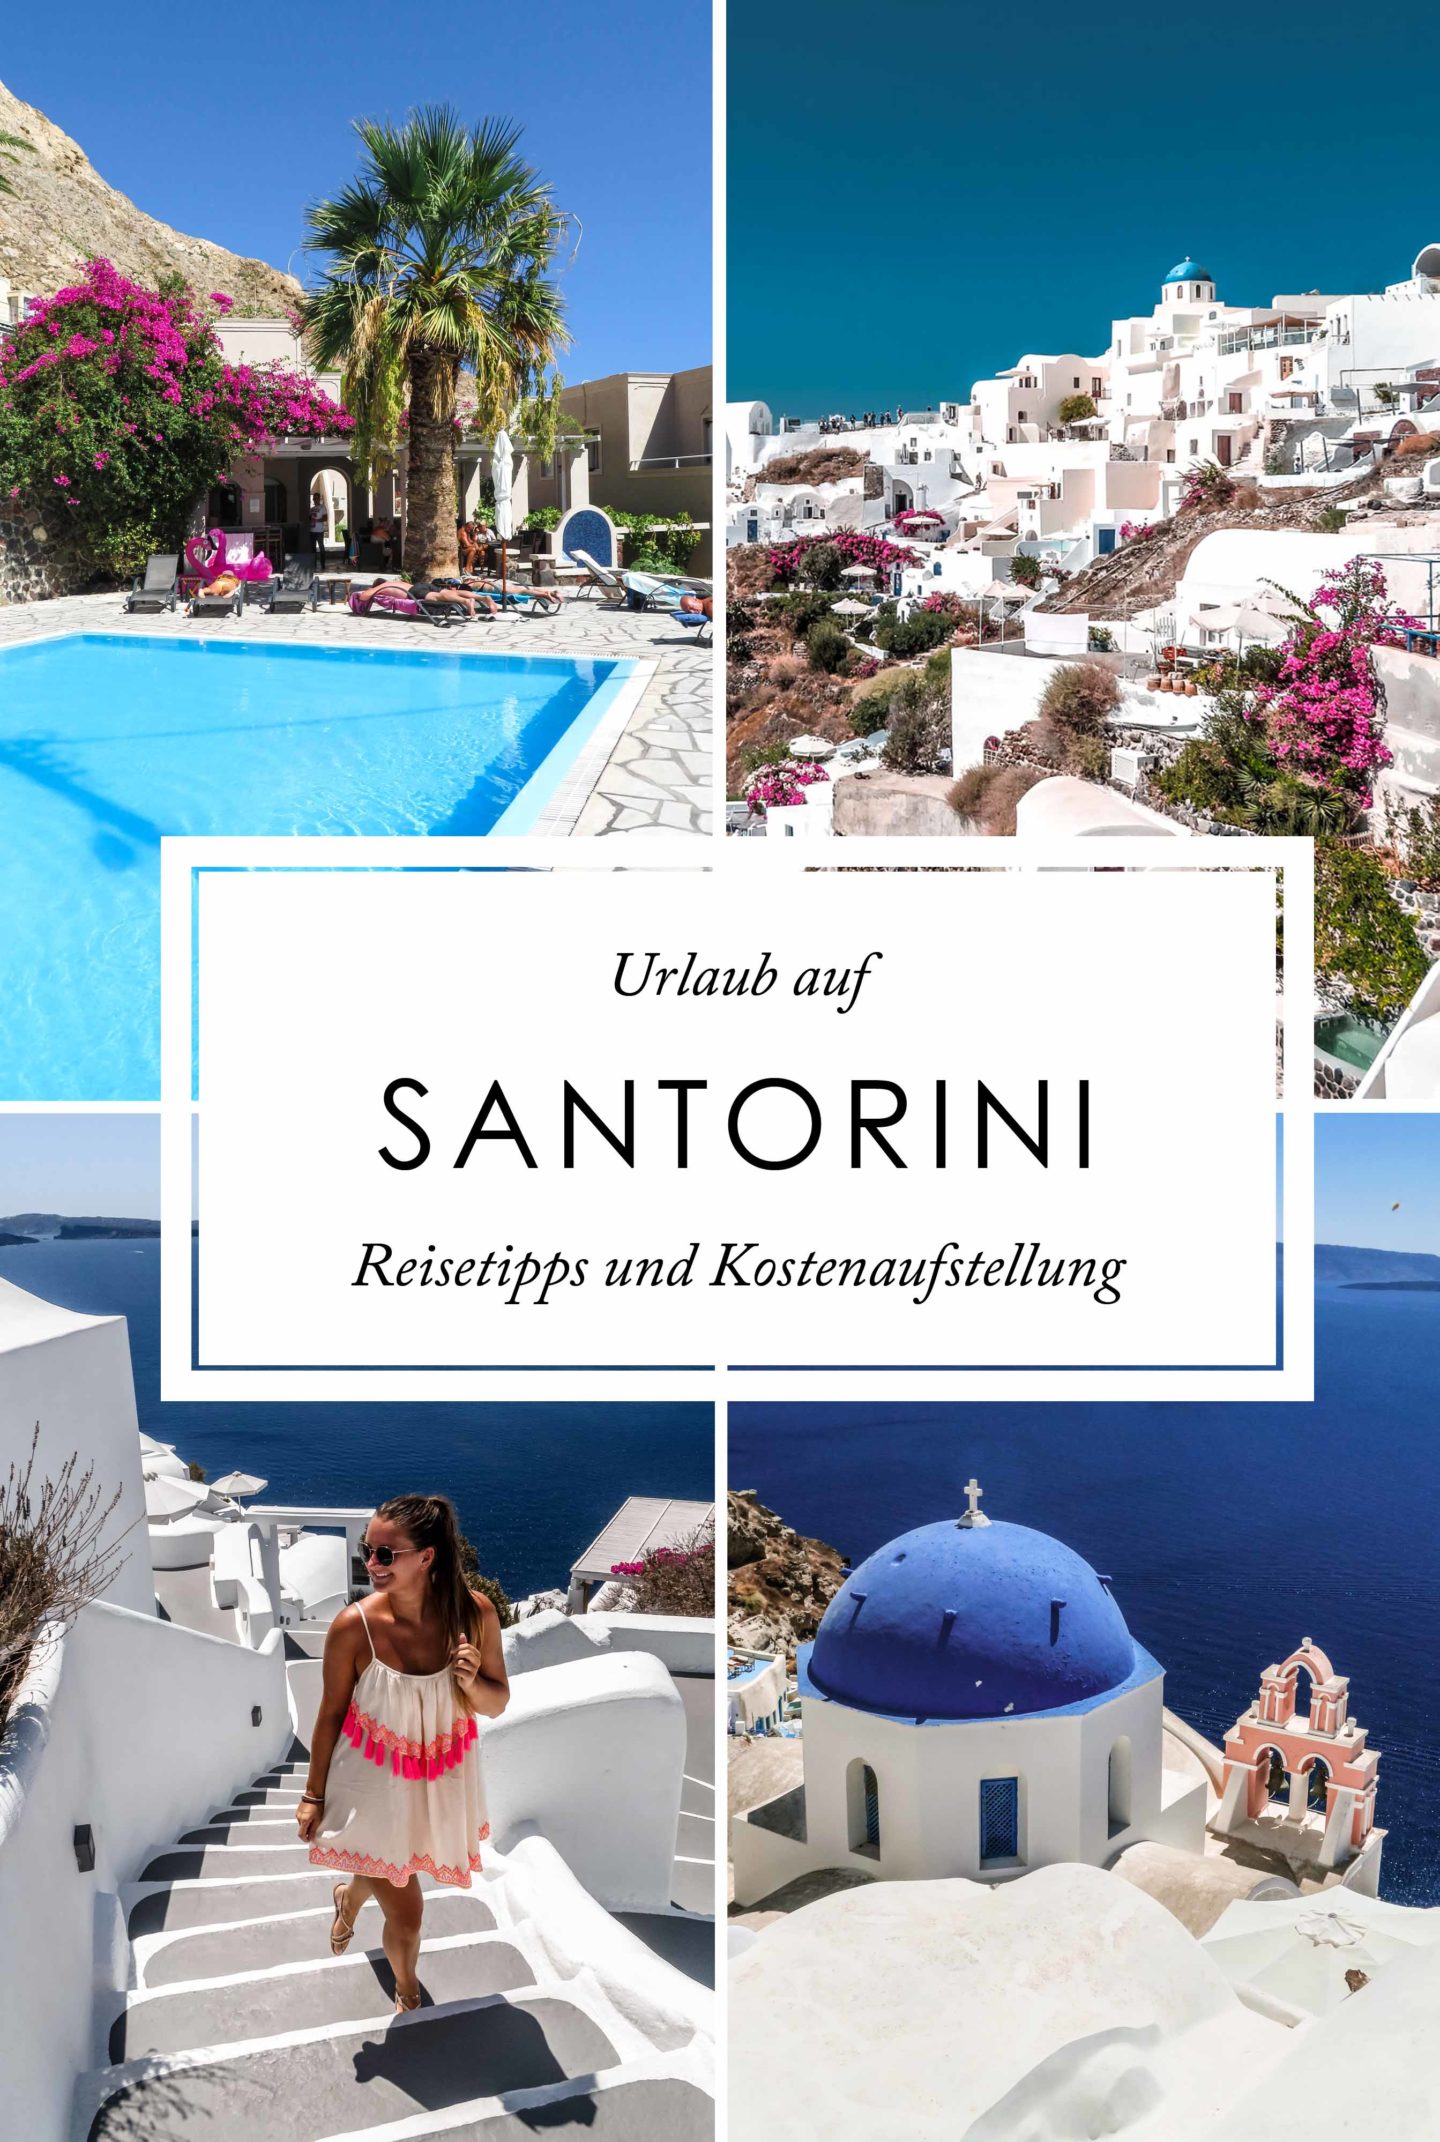 Santorini Reisetipps und Kostenaufstellung